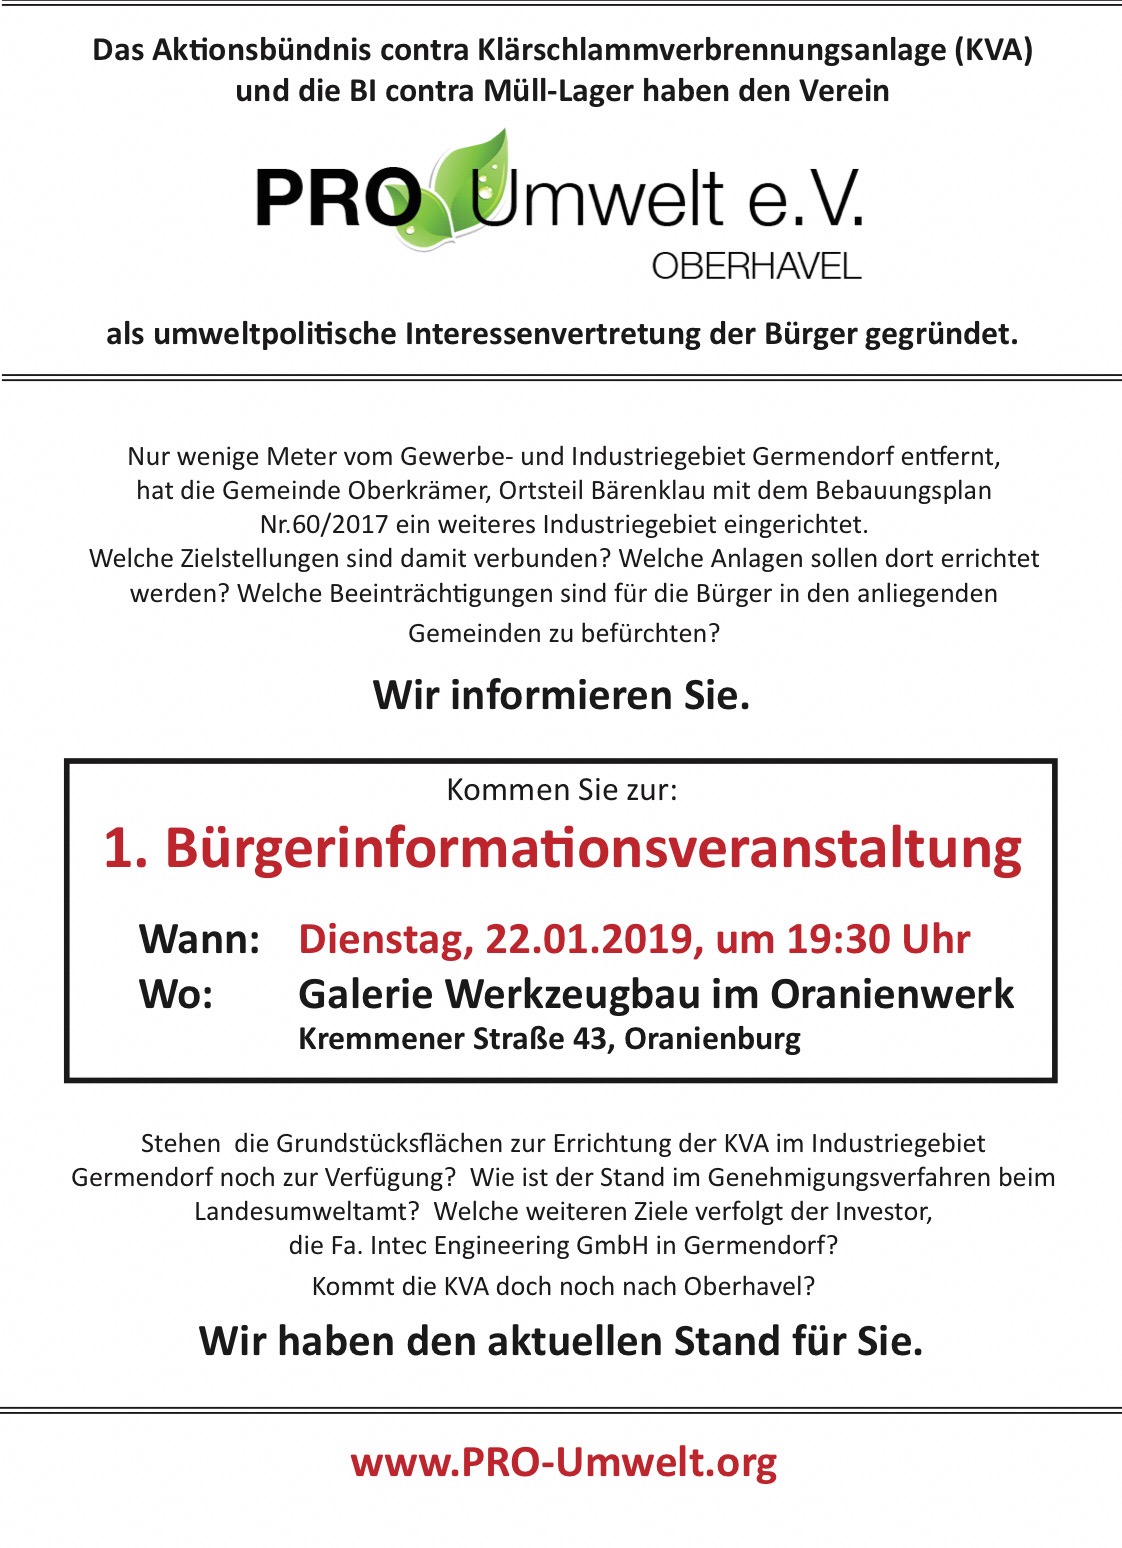 1. Bürgerinformationsveranstaltung des neu gegründeten, gemeinnützigen Vereins PRO-Umwelt e.V. Oberhavel